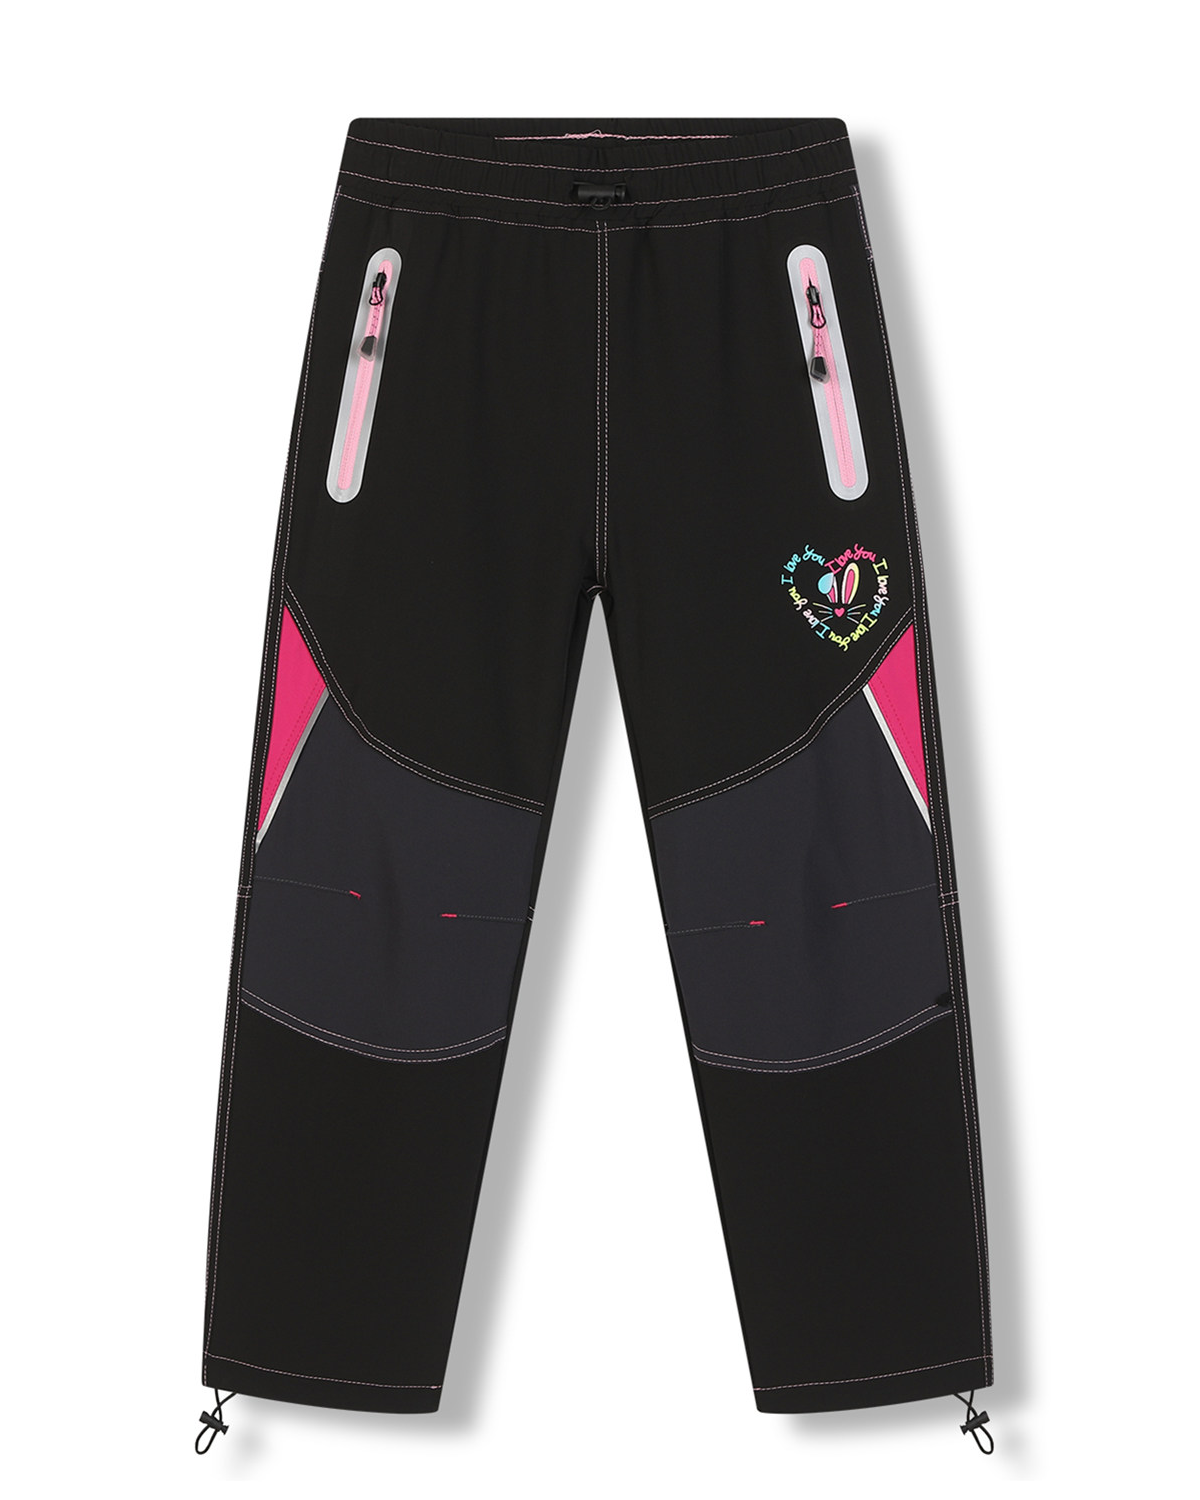 Dívčí softshellové kalhoty - KUGO HK7585, černá / růžové zipy Barva: Černá, Velikost: 128